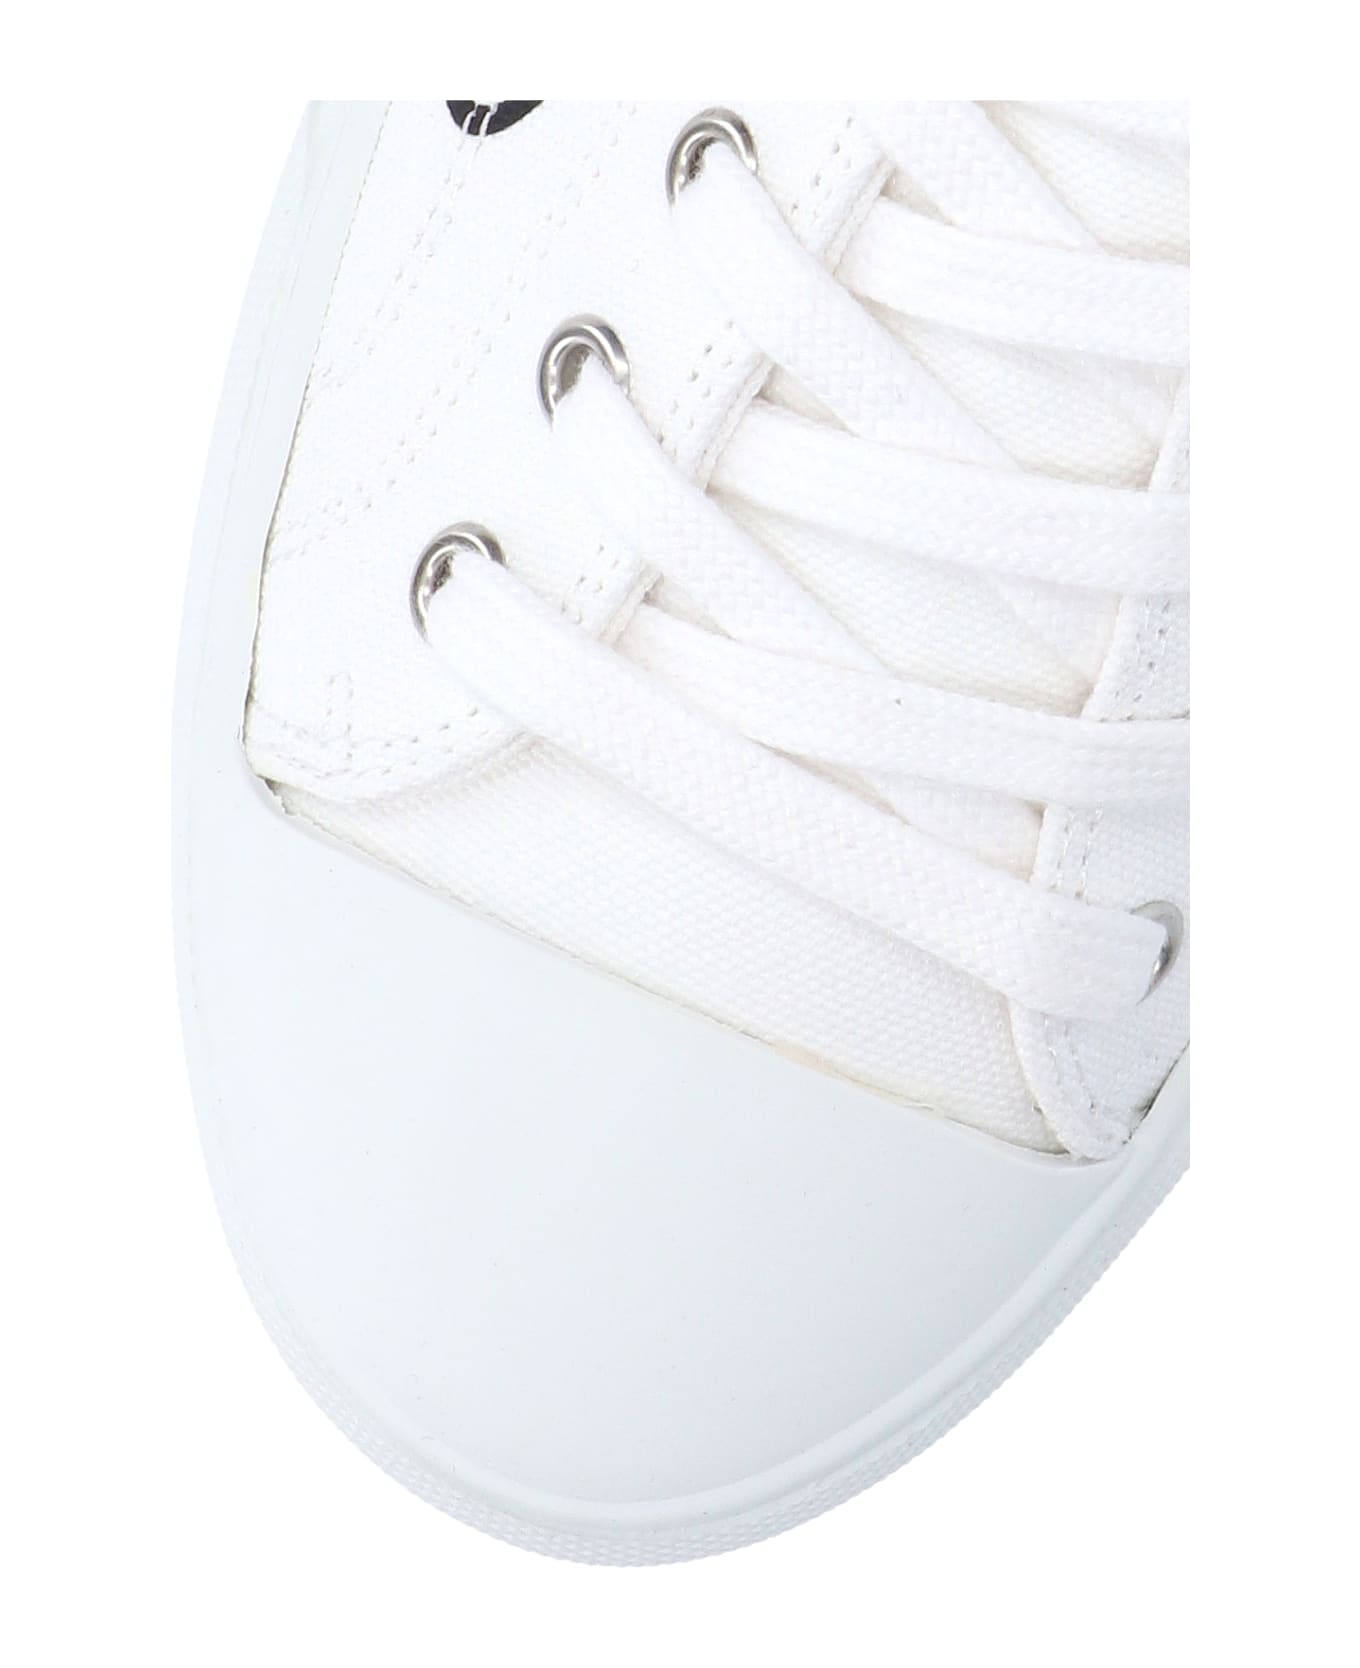 Vivienne Westwood "plimsoll Low Top 2.0" Sneakers - White